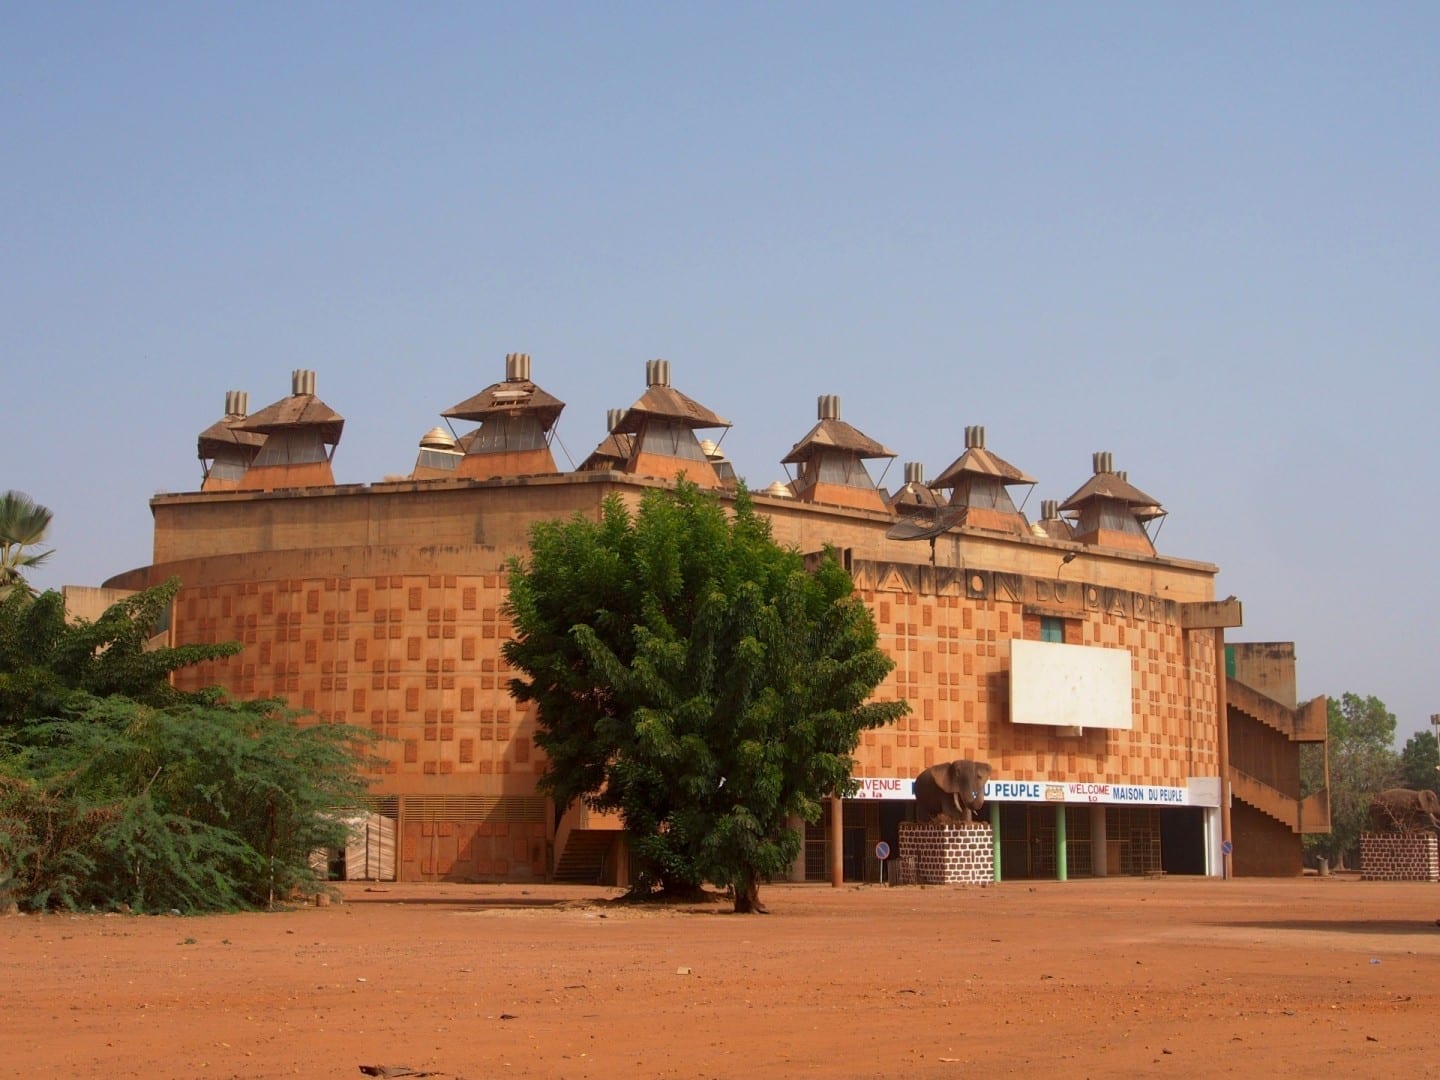 La casa de la gente. Uagadugú Burkina Faso